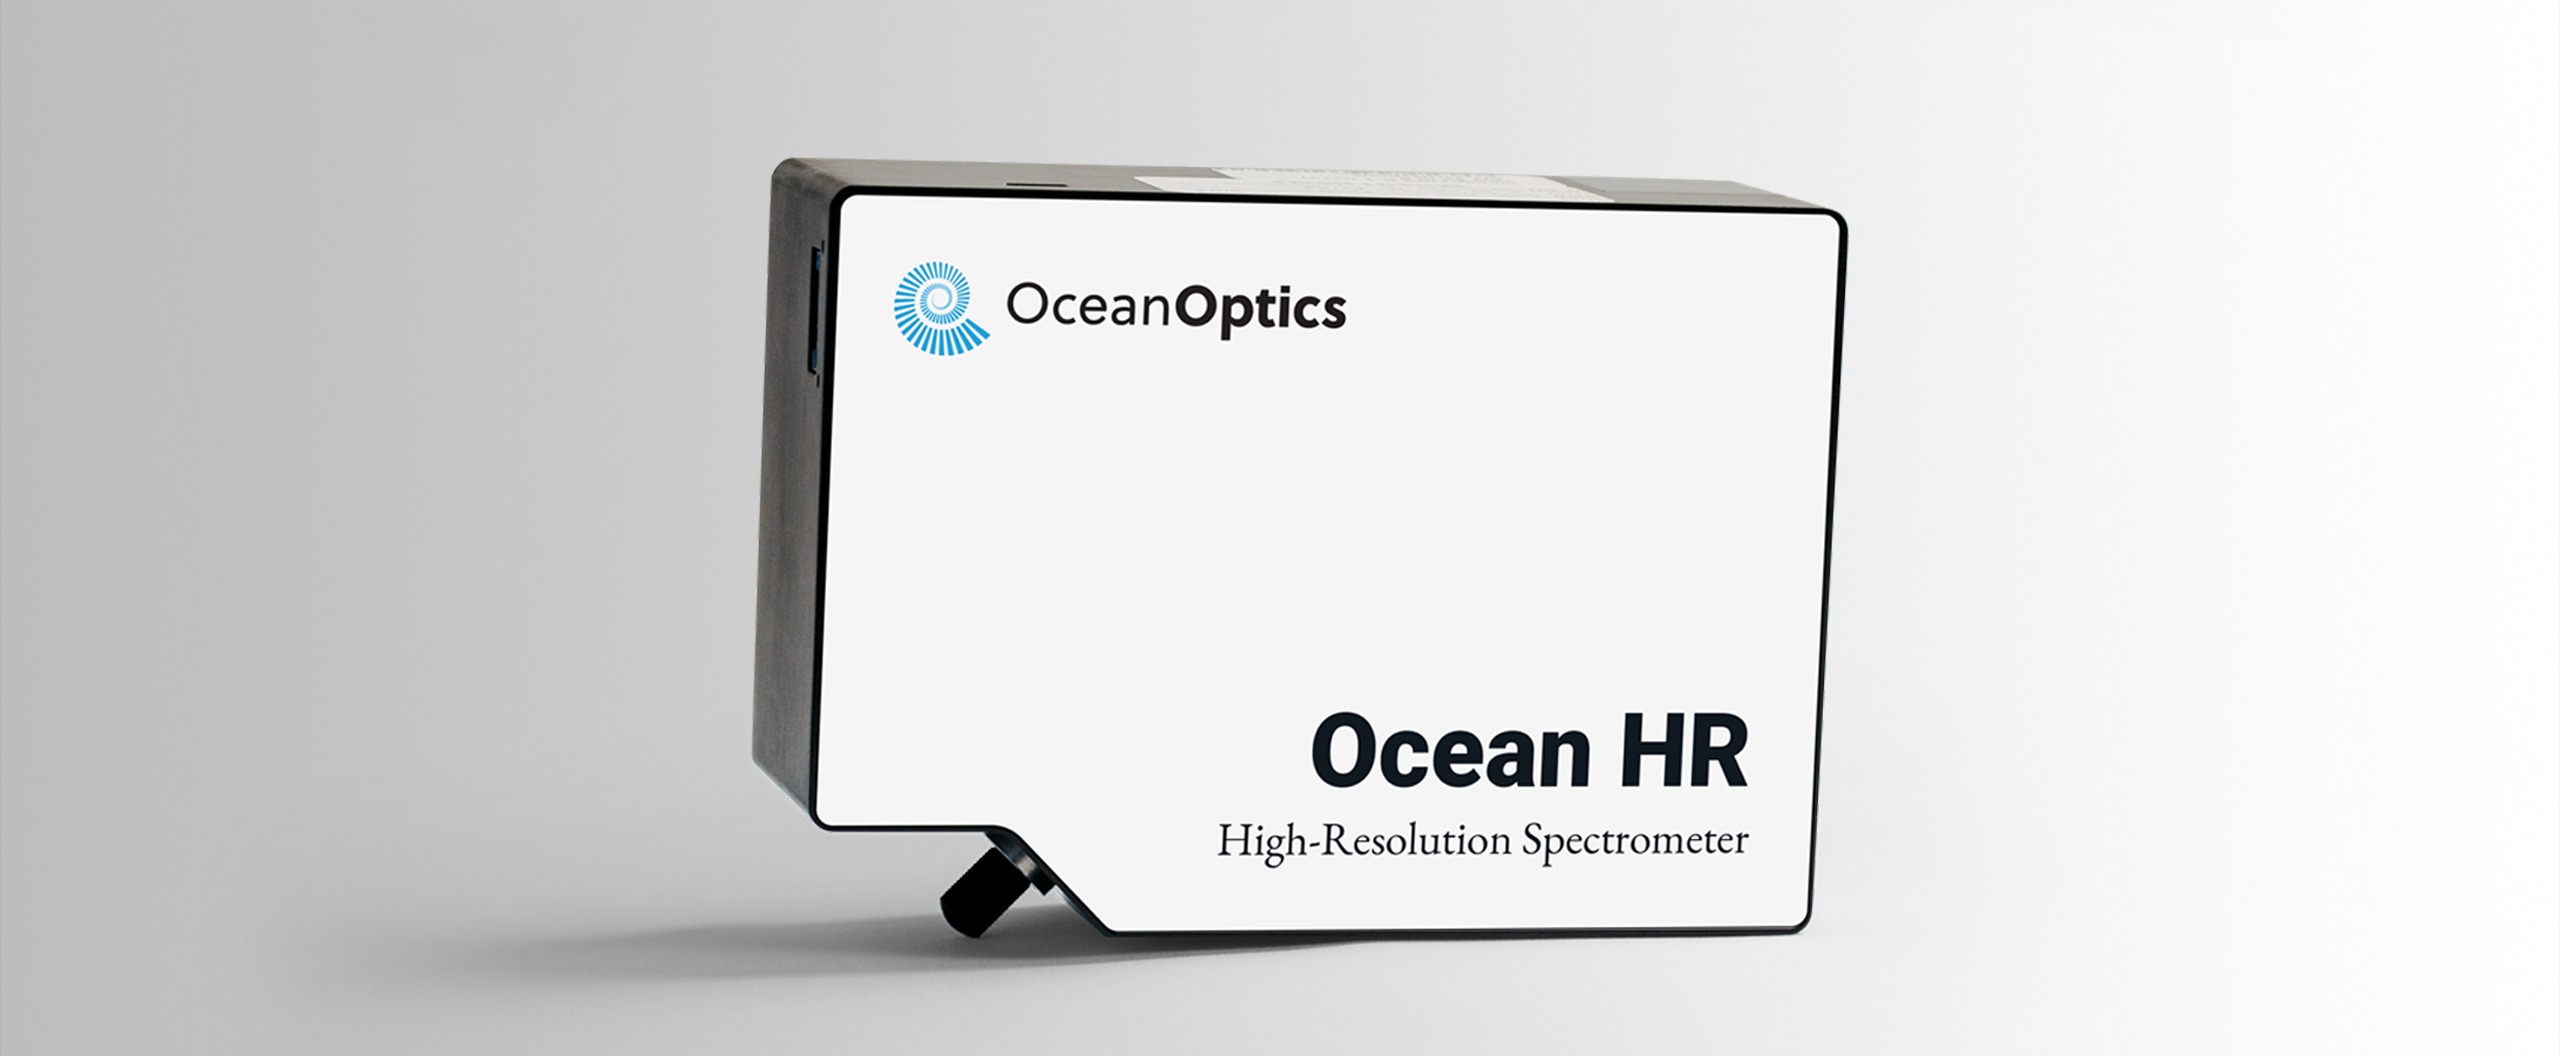 Ocean HRシリーズ 高分解能マルチチャンネル分光器